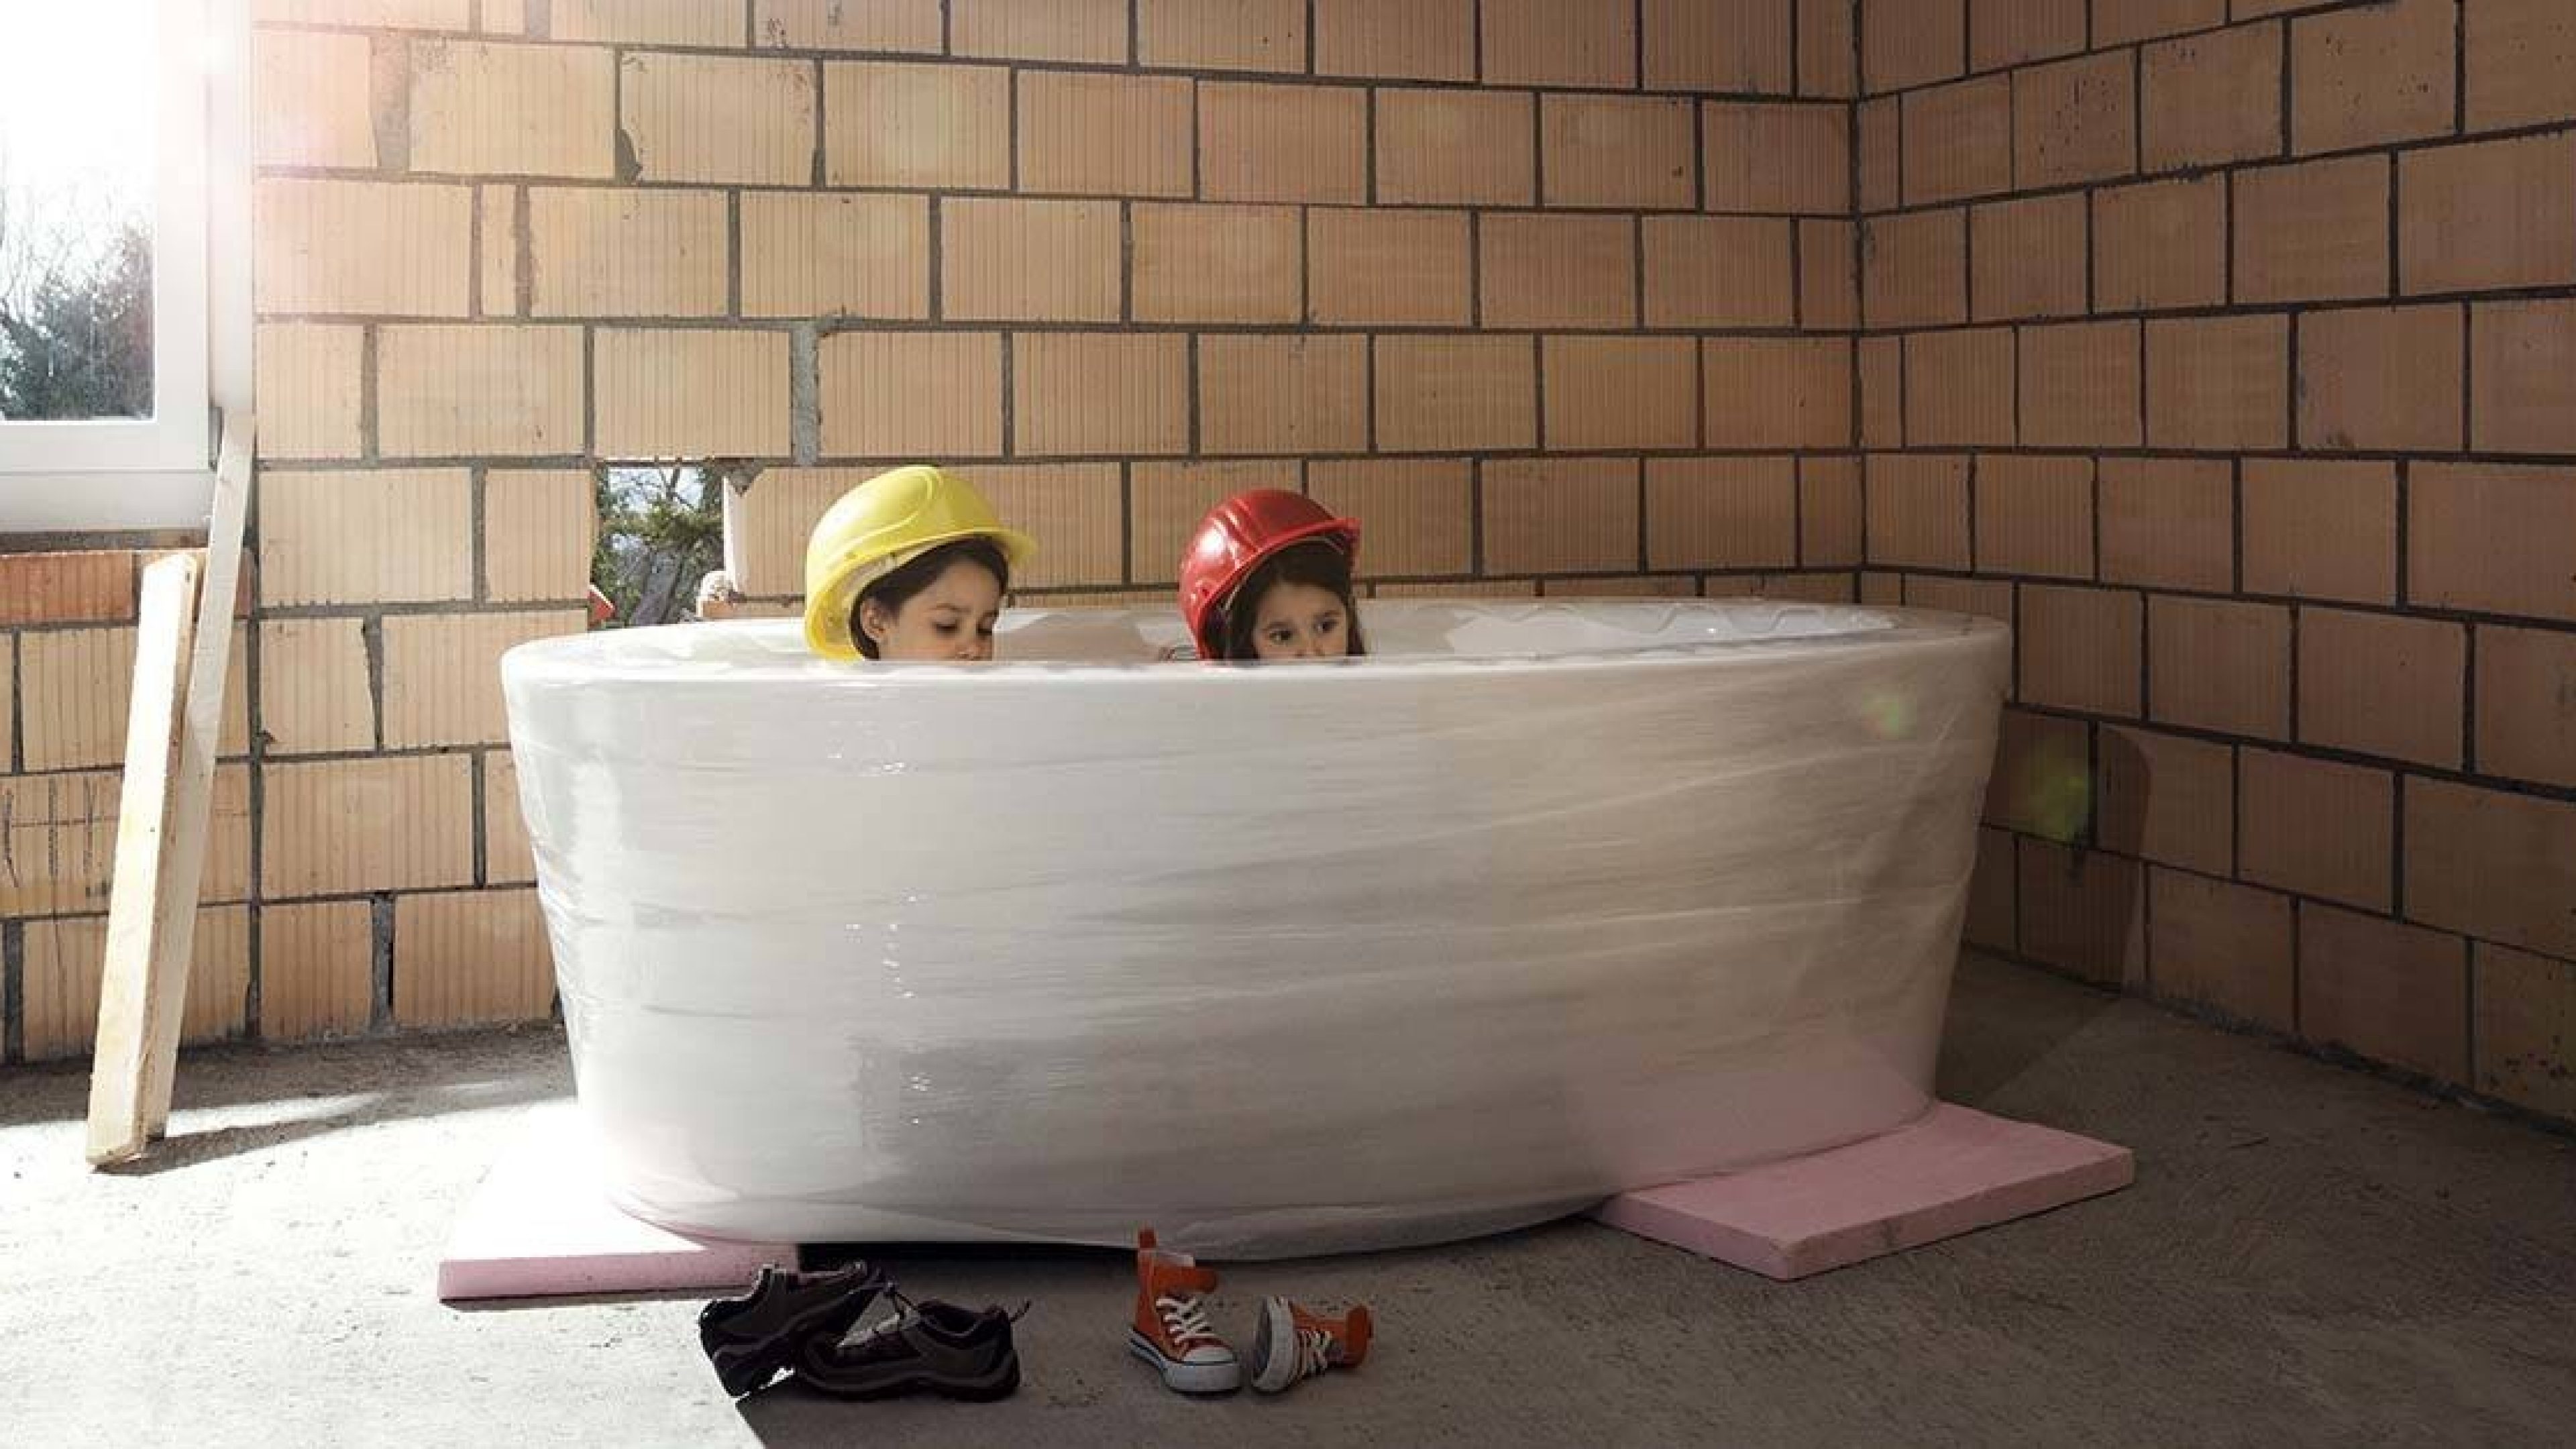 Kinder sitzen in Badewanne im Rohbau des Eigenheims